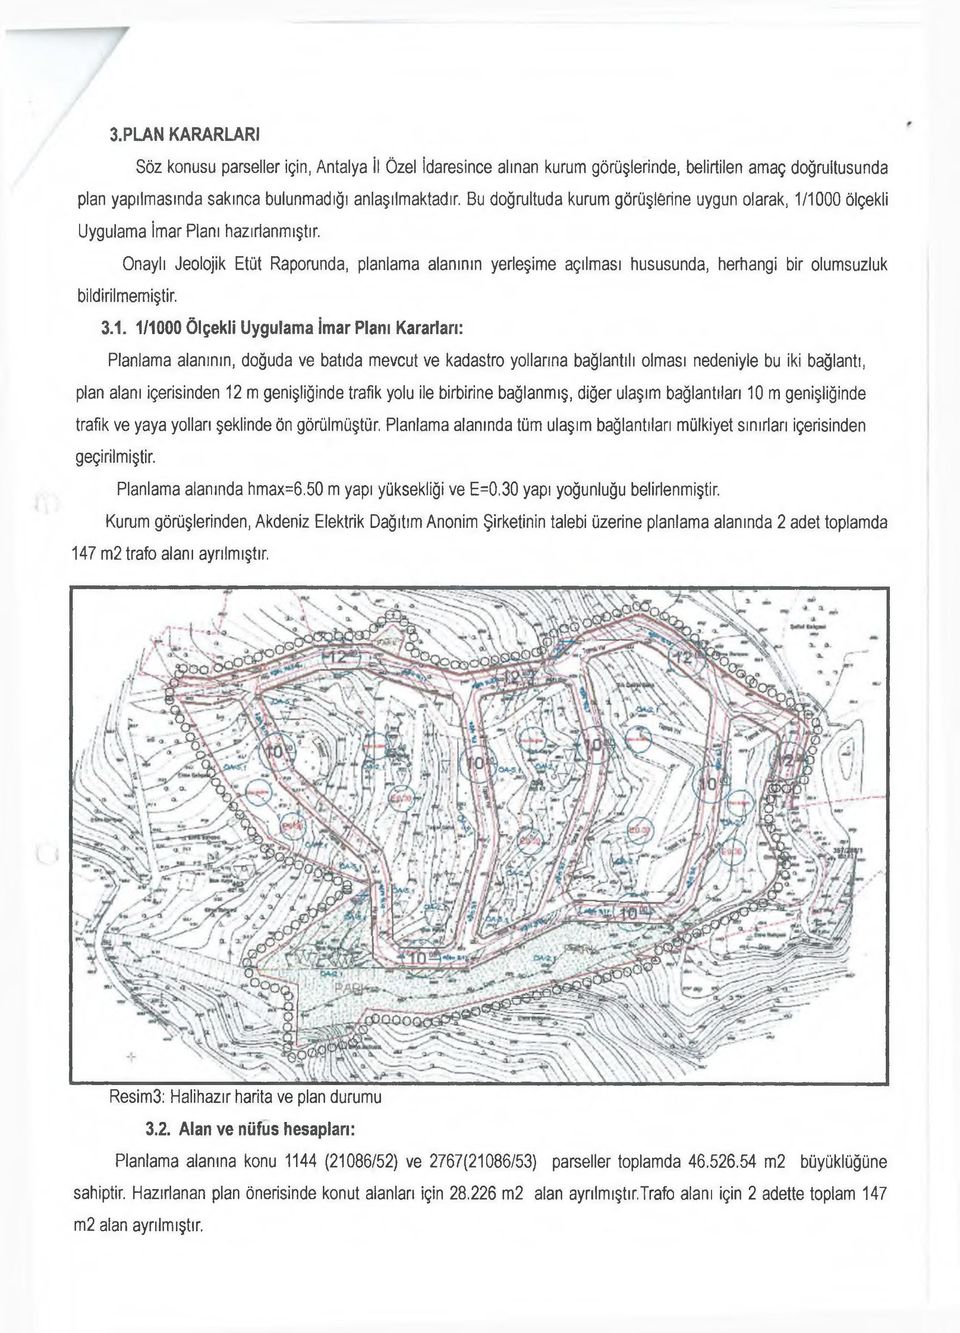 Onaylı Jeolojik Etüt Raporunda, planlama alanının yerleşime açılması hususunda, herhangi bir olumsuzluk bildirilmemiştir. 3.1.